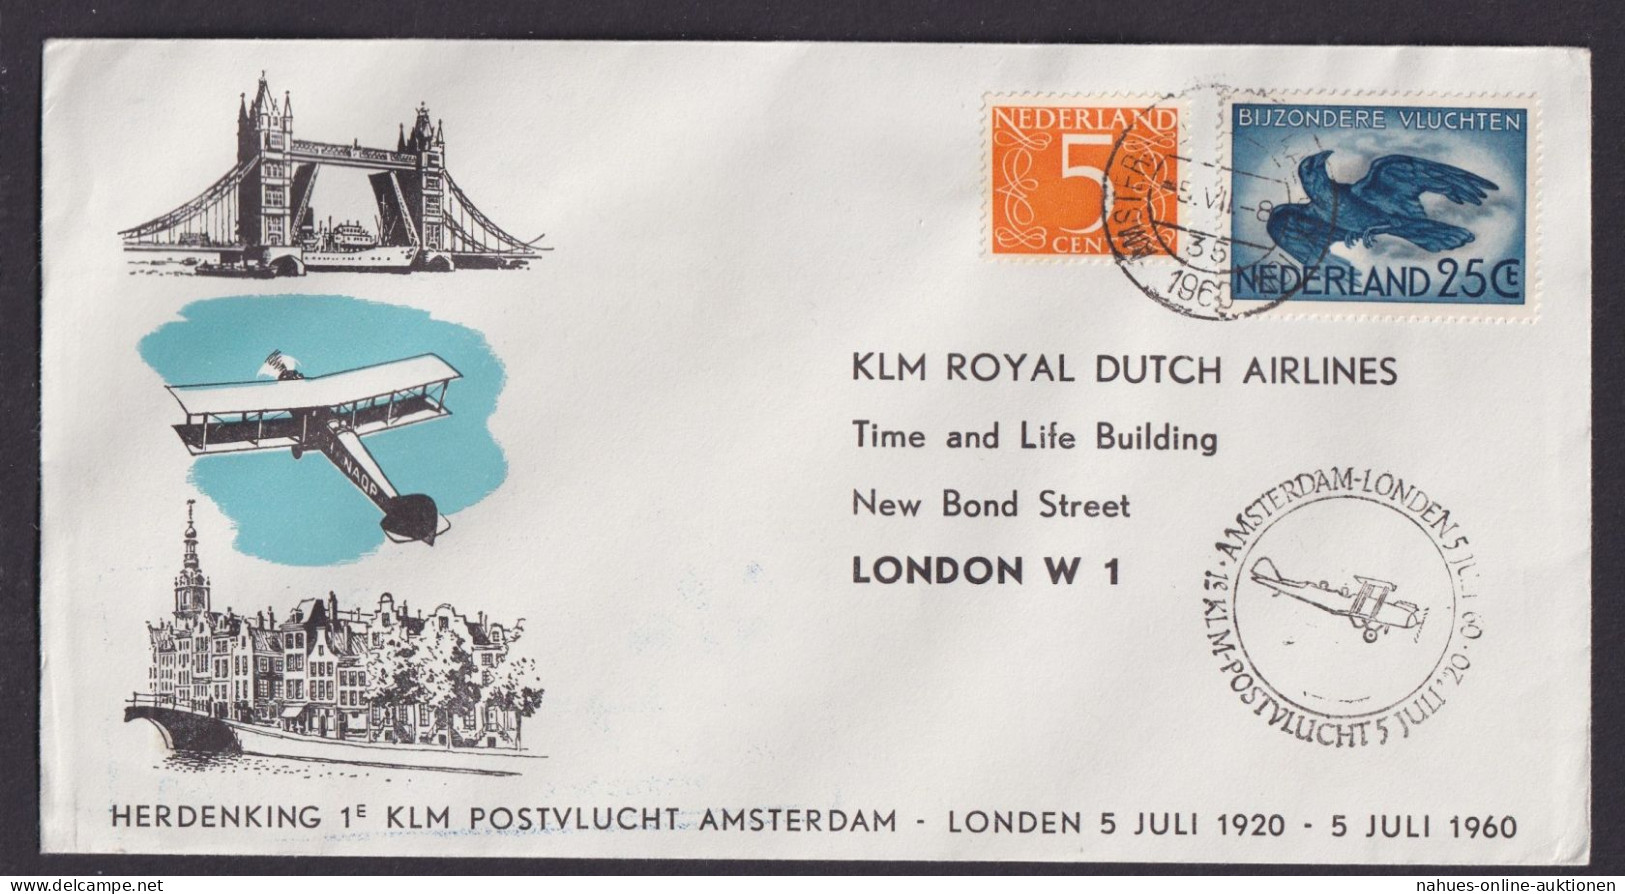 Gedenk Flugpost Brief Air Mail Niederlande KLM Amsterdam London Grossbritannien - Poste Aérienne